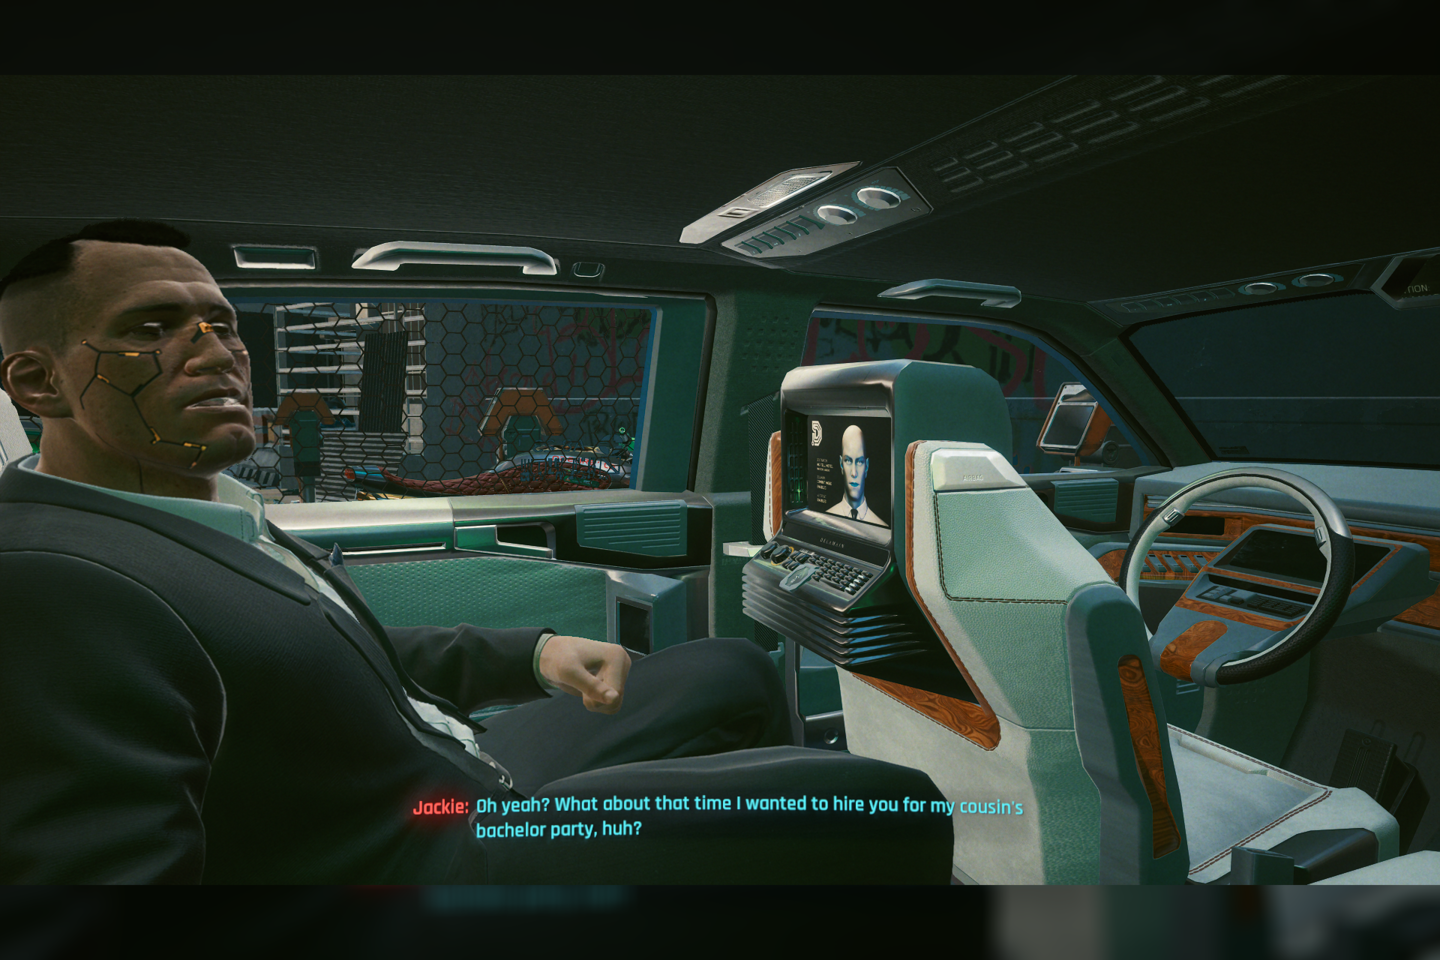  Vaizdai iš „Cyberpunk 2077“ pasaulio. Ekrano nuotraukos žaidžiant asmeniniu „Windows“ kompiuteriu.